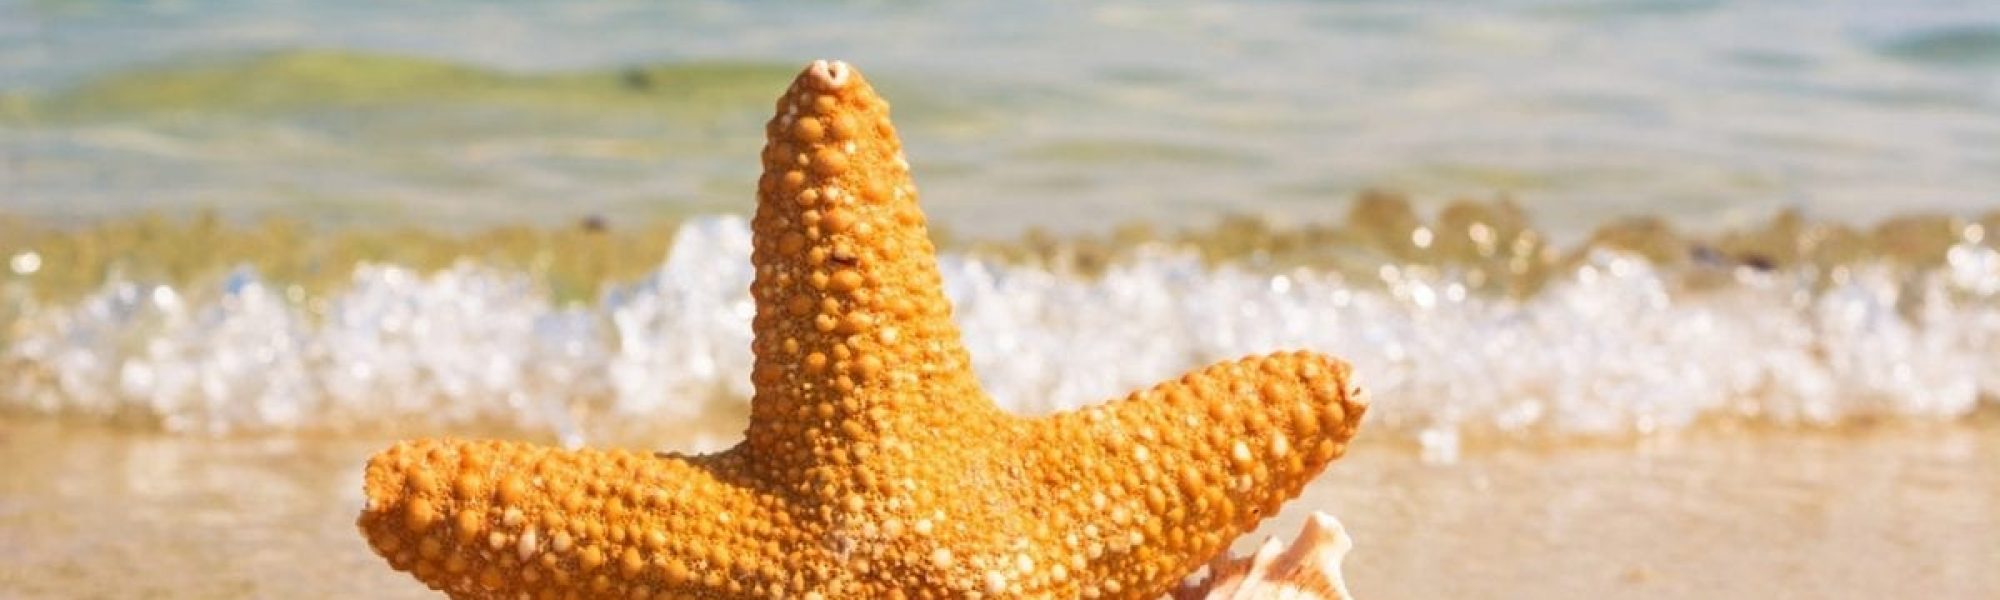 Starfish and seashells on beach